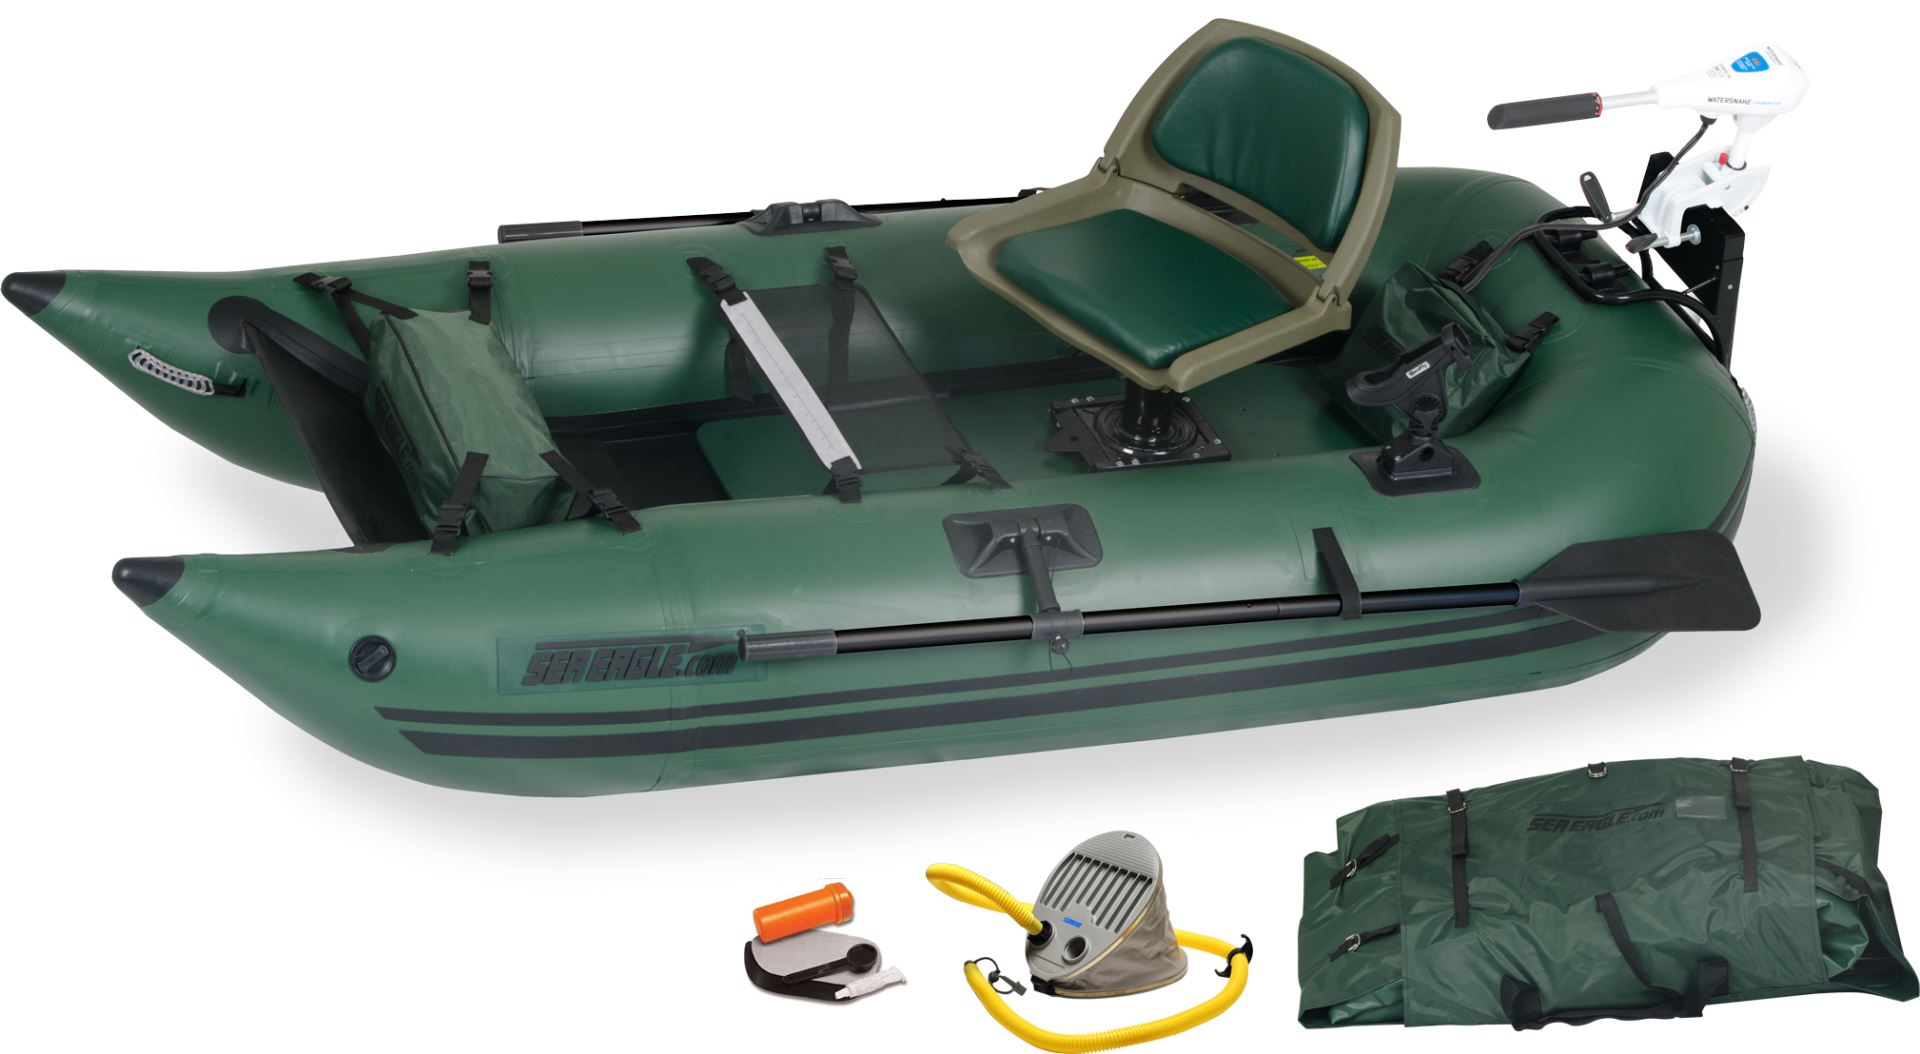 Sea Eagle 285FPB Honda Motor Inflatable Fishing Boats Package